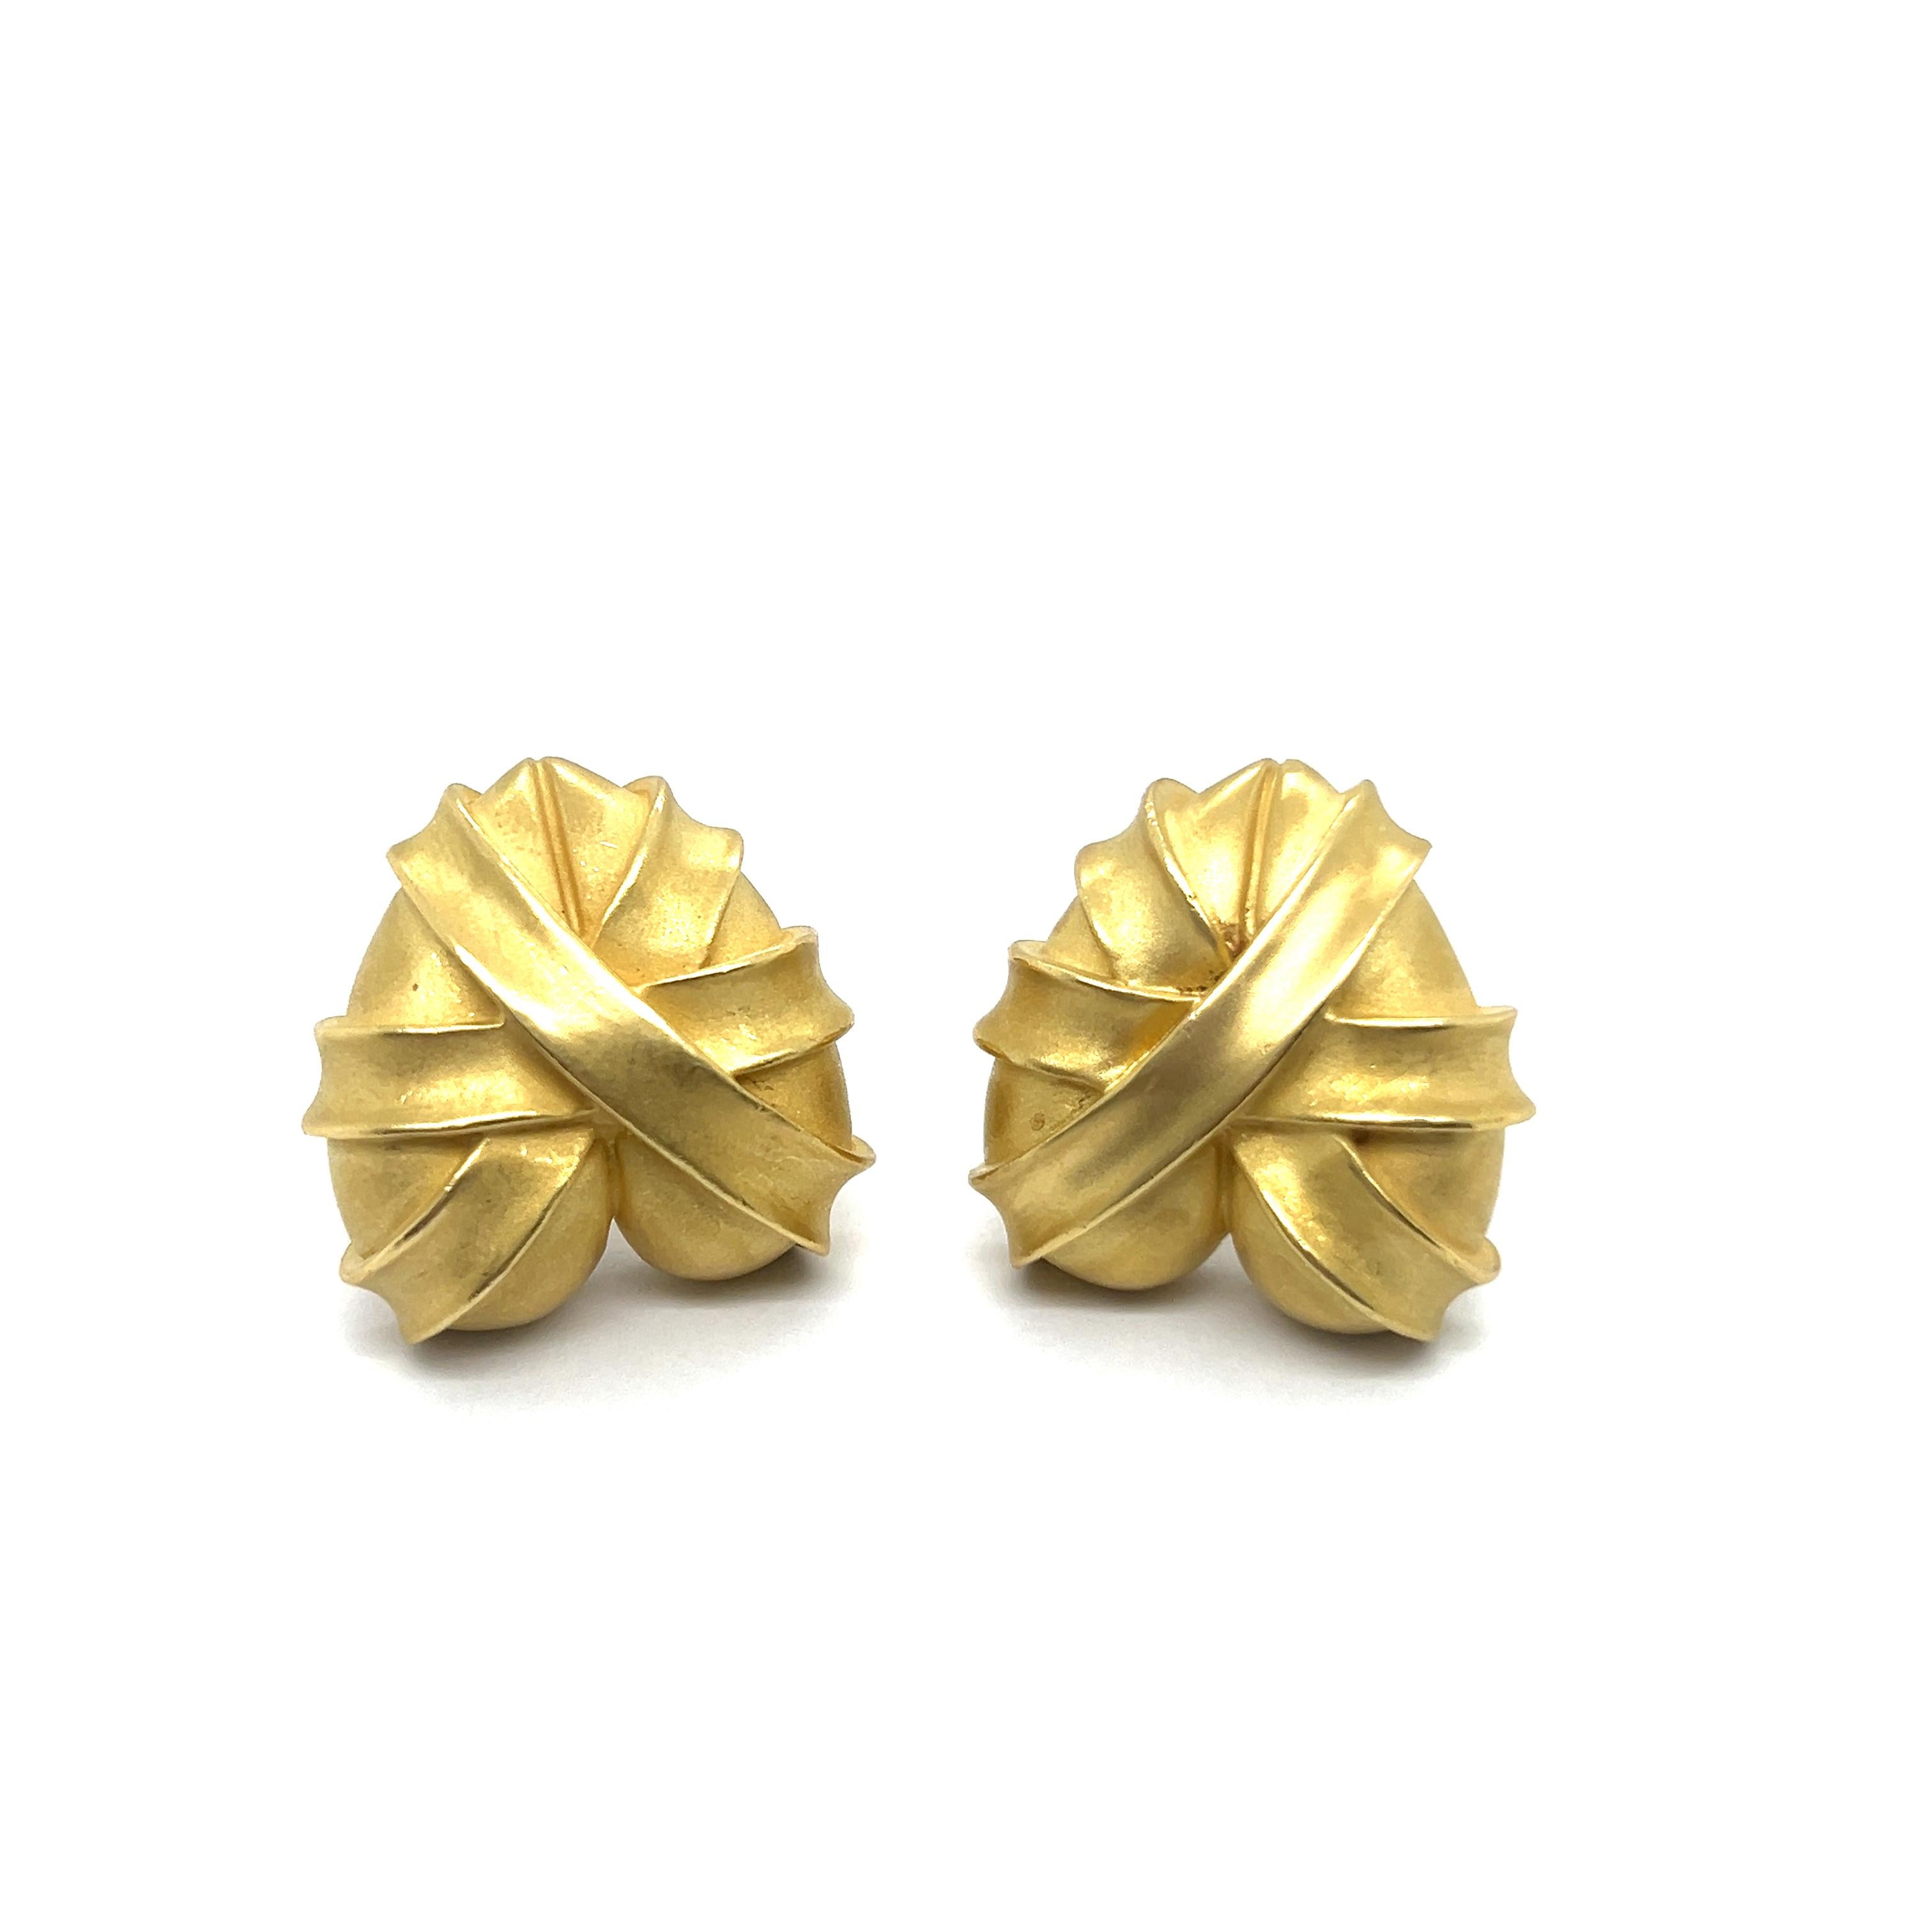 Artist Heart-shaped Earrings in 18 Karat Yellow Gold by Kieselstein-Cord For Sale